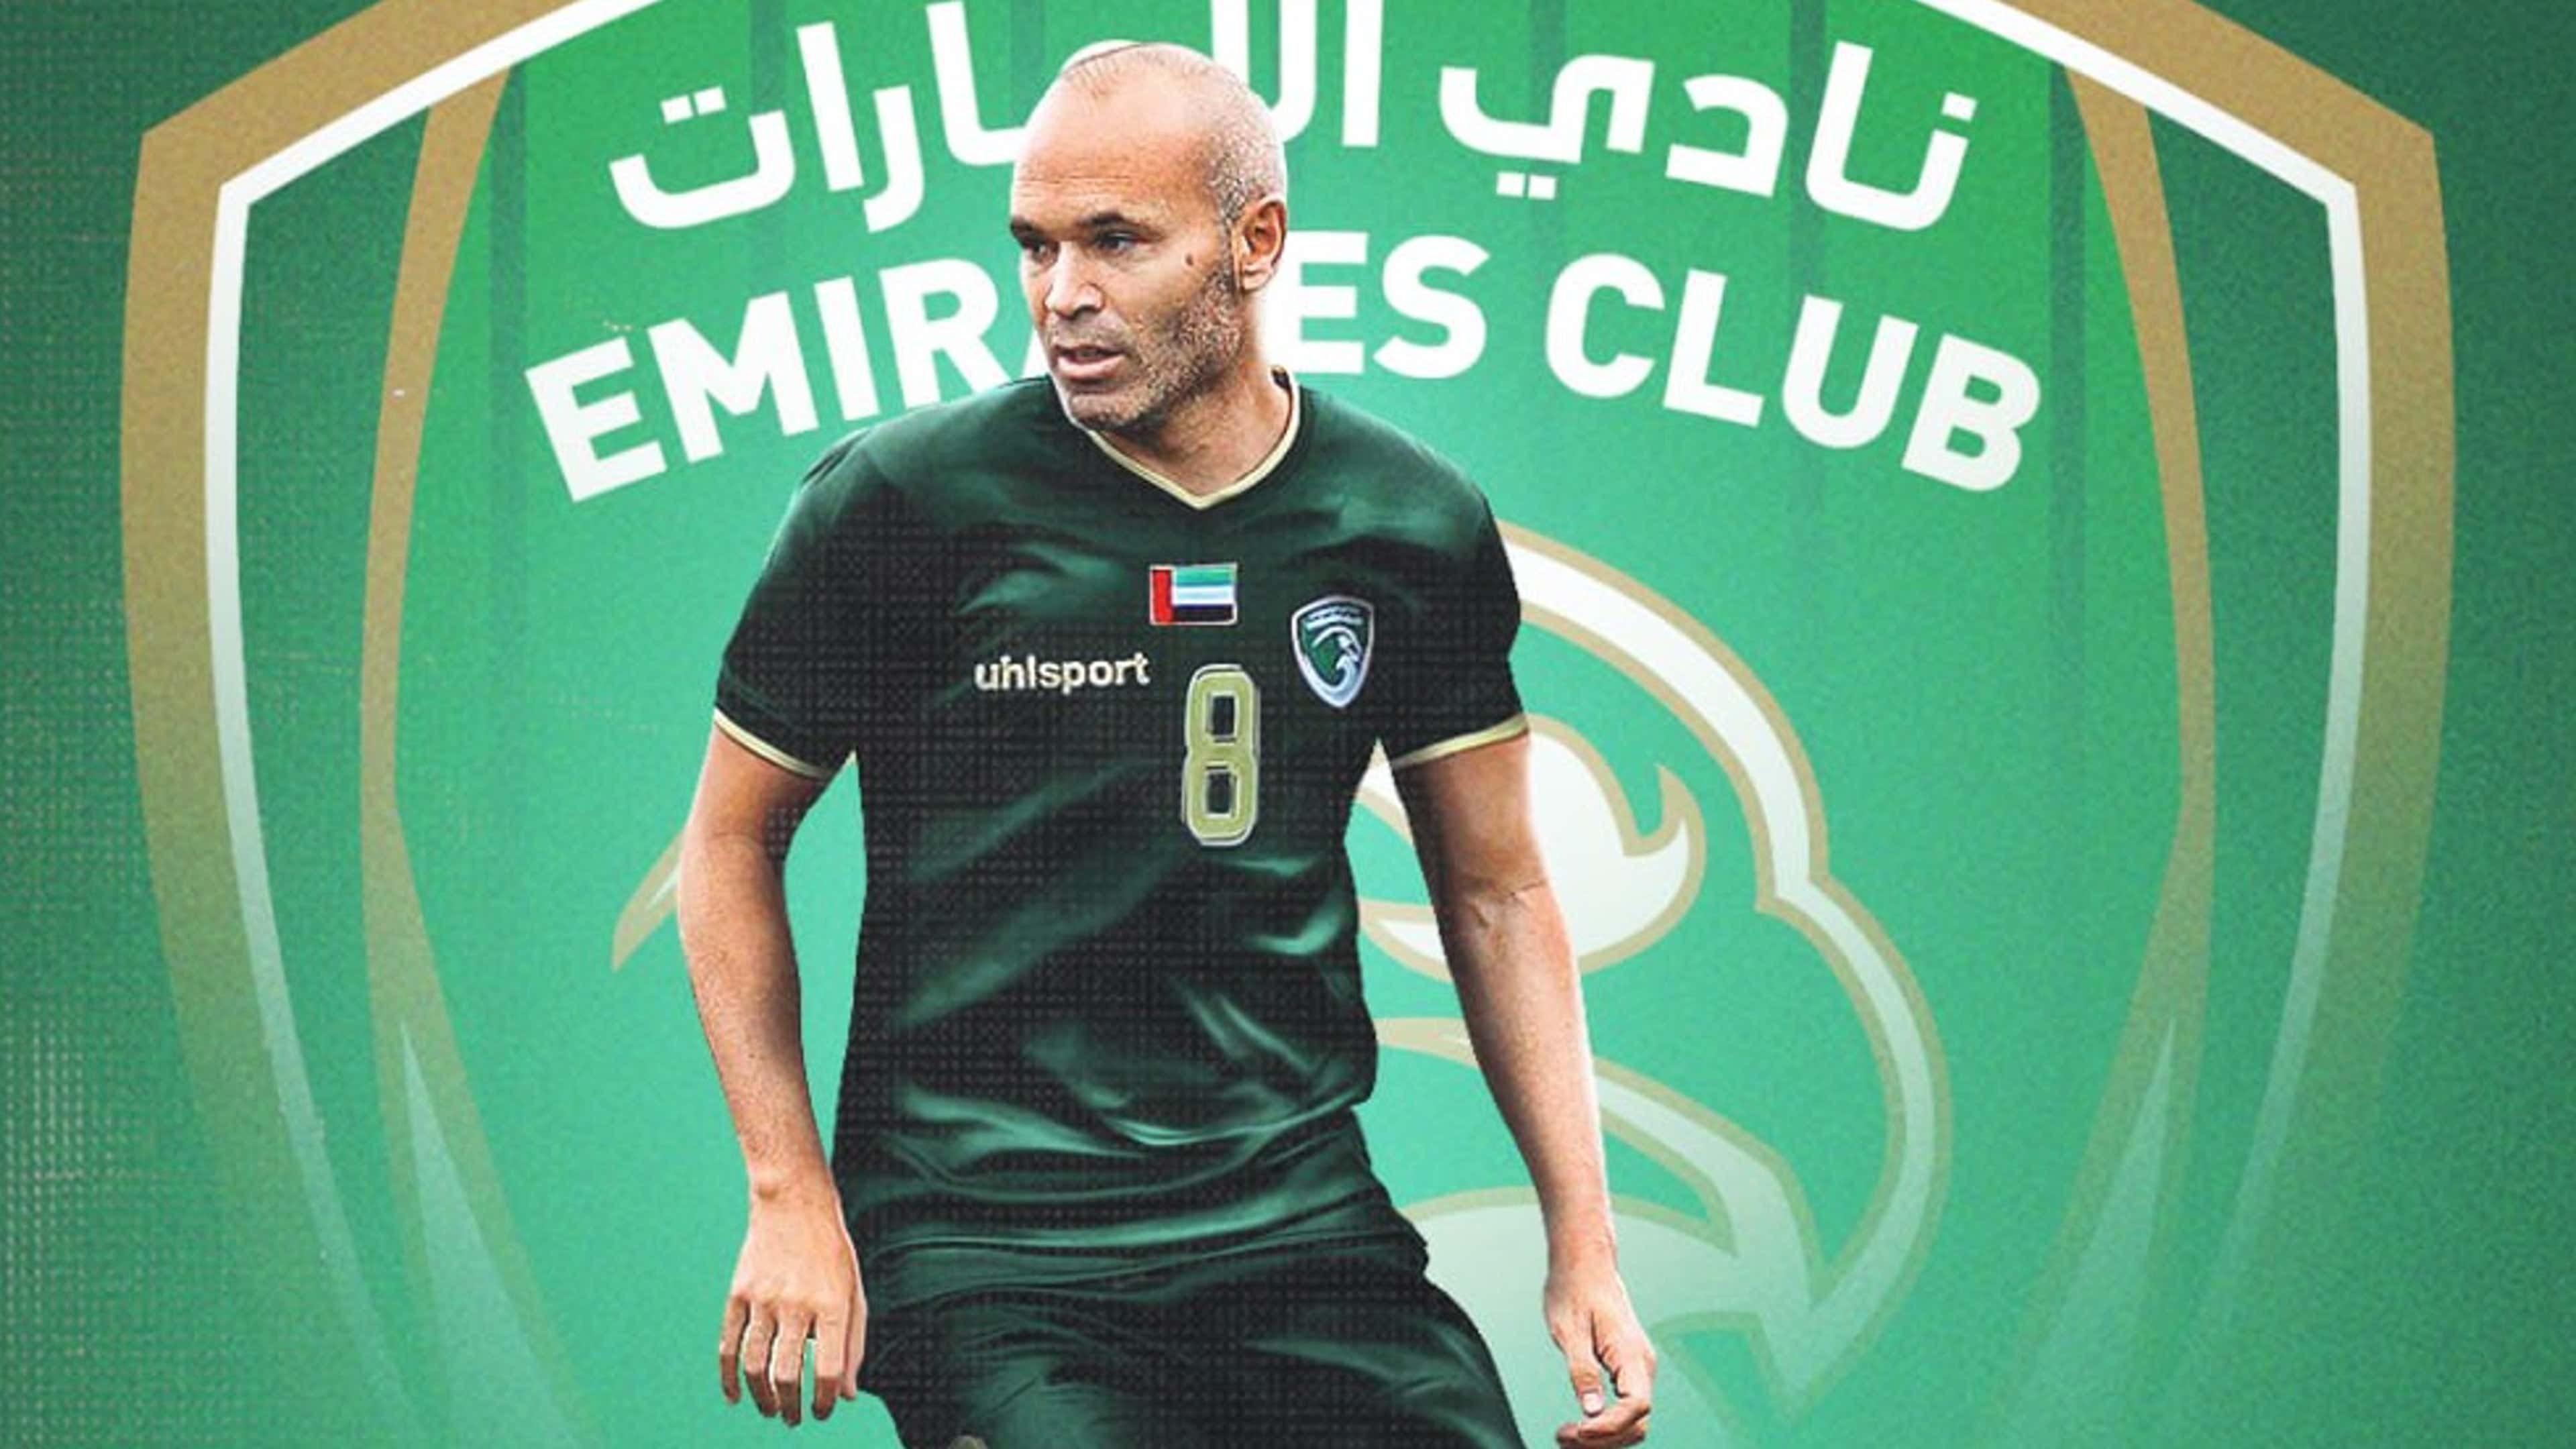 Iniesta Emirates Club